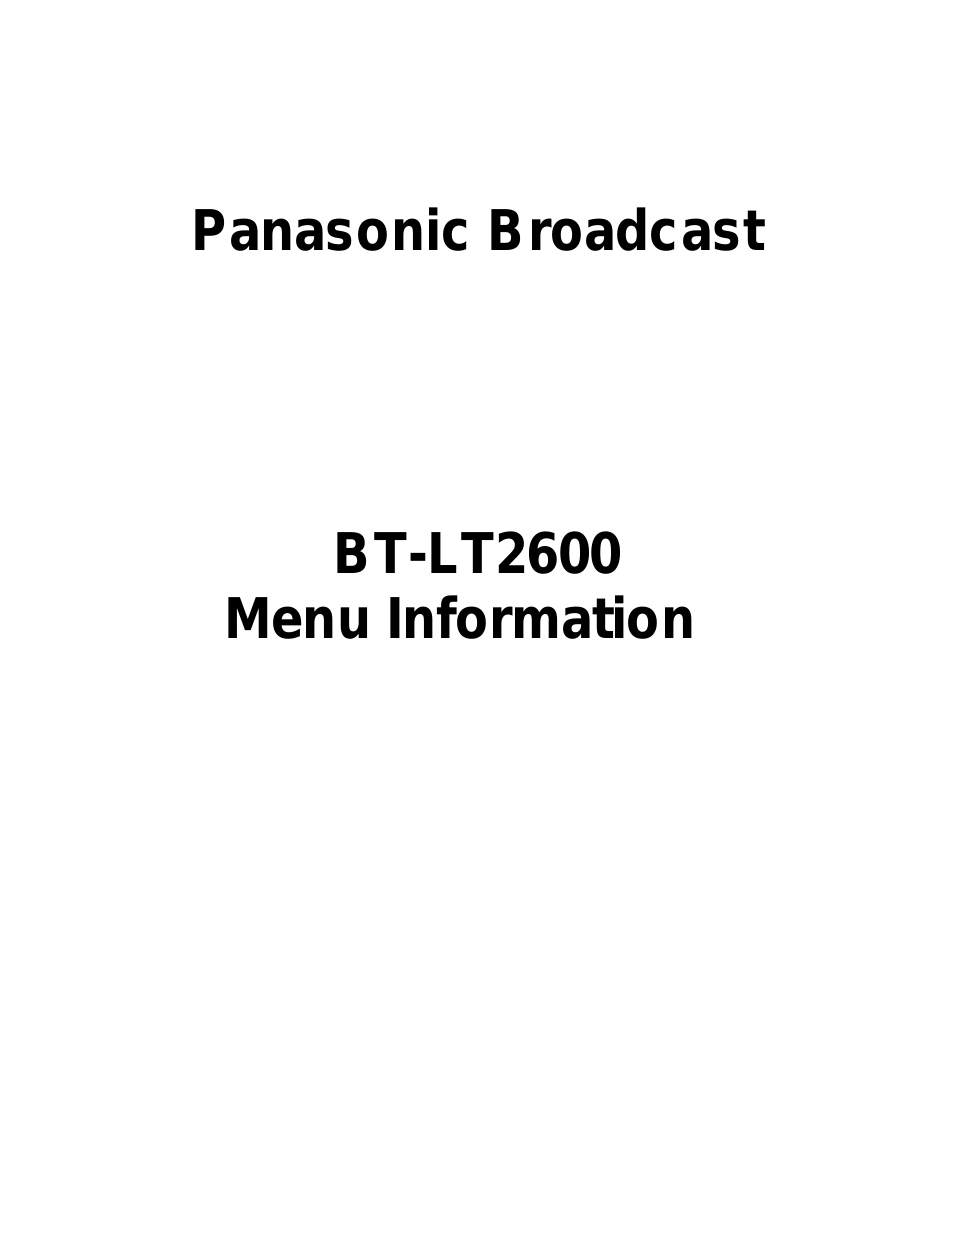 BT-LT2600